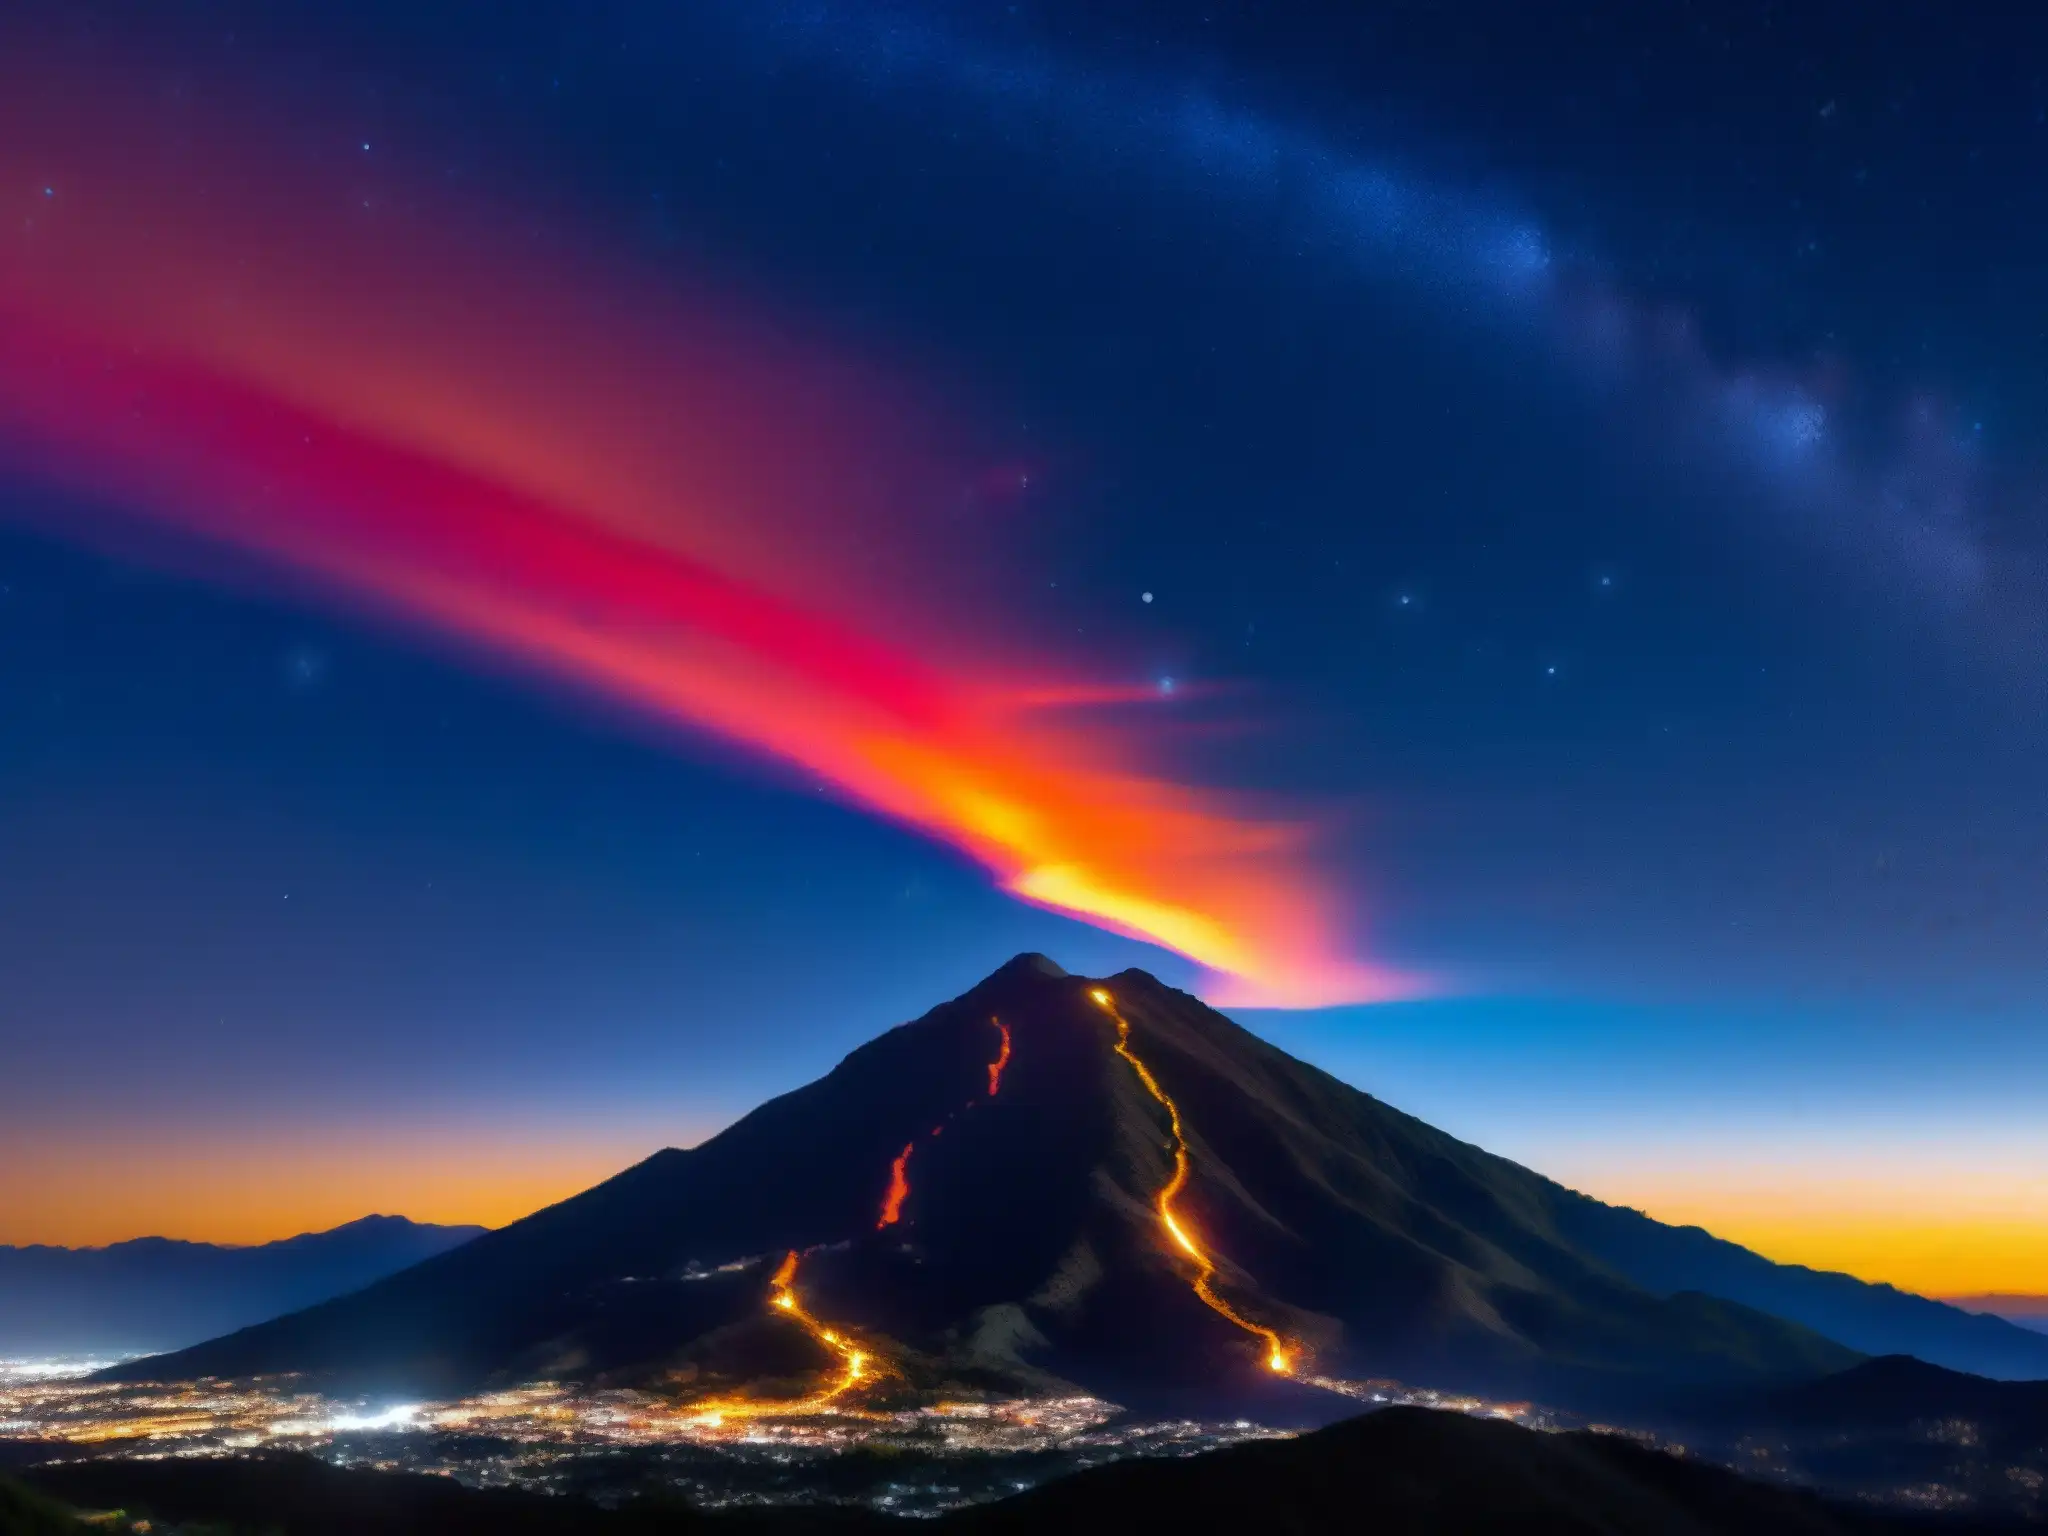 Deslumbrante Bola de Fuego atraviesa el cielo nocturno de México, evocando asombro y misterio celestial